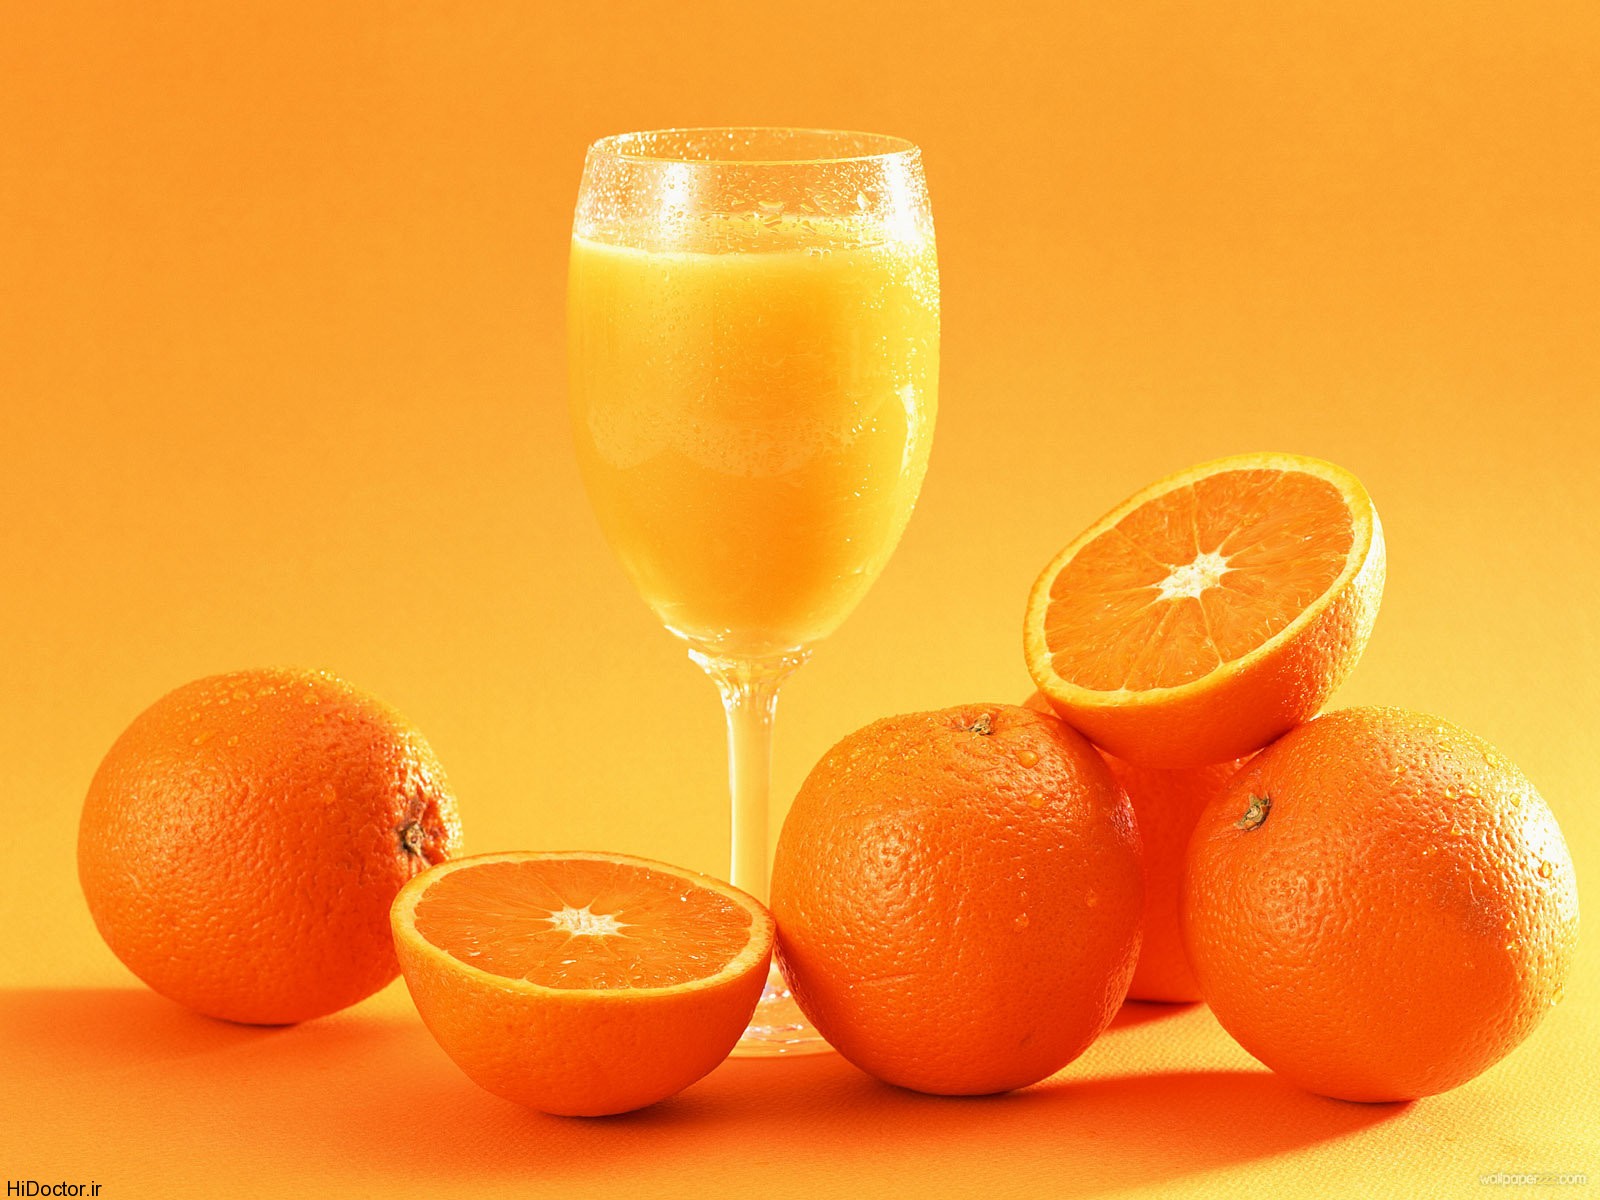 ” آب پرتقال” مفید یا مضر؟